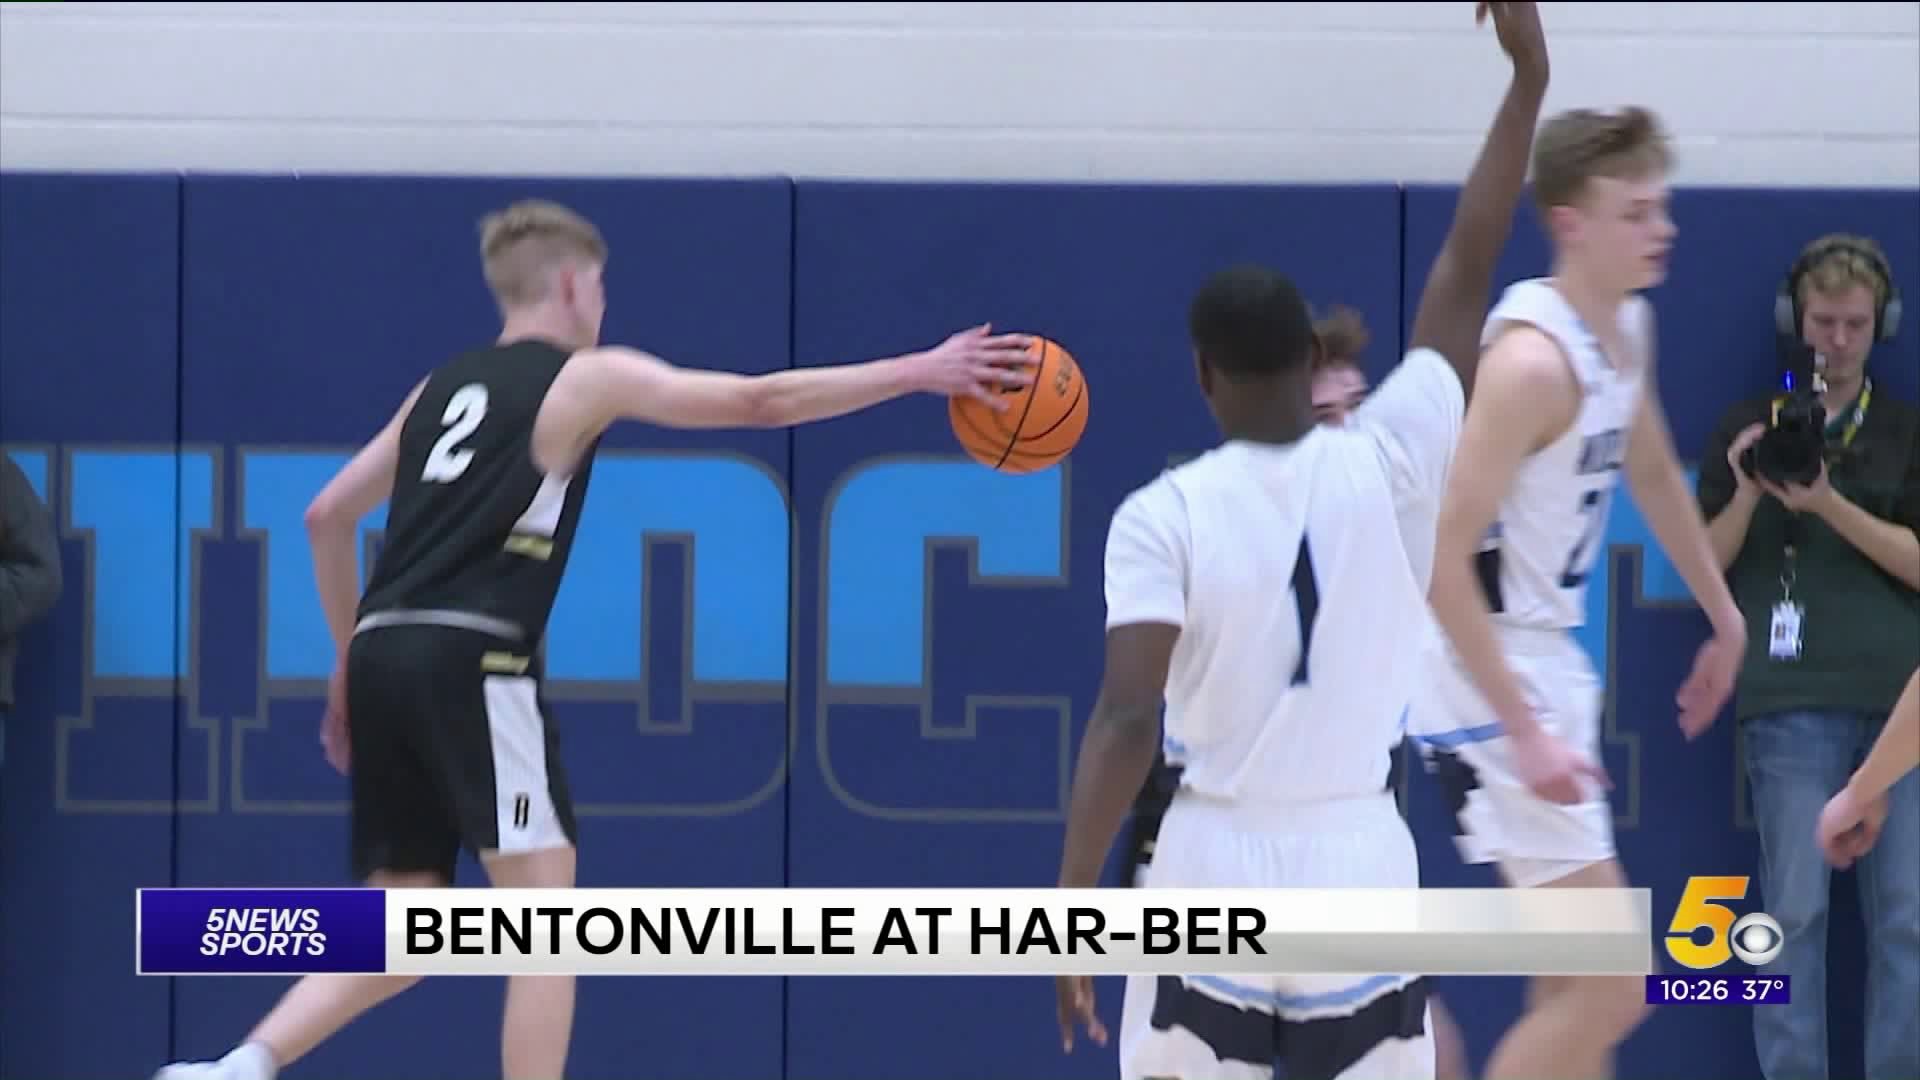 Bentonville at Har-Ber boys